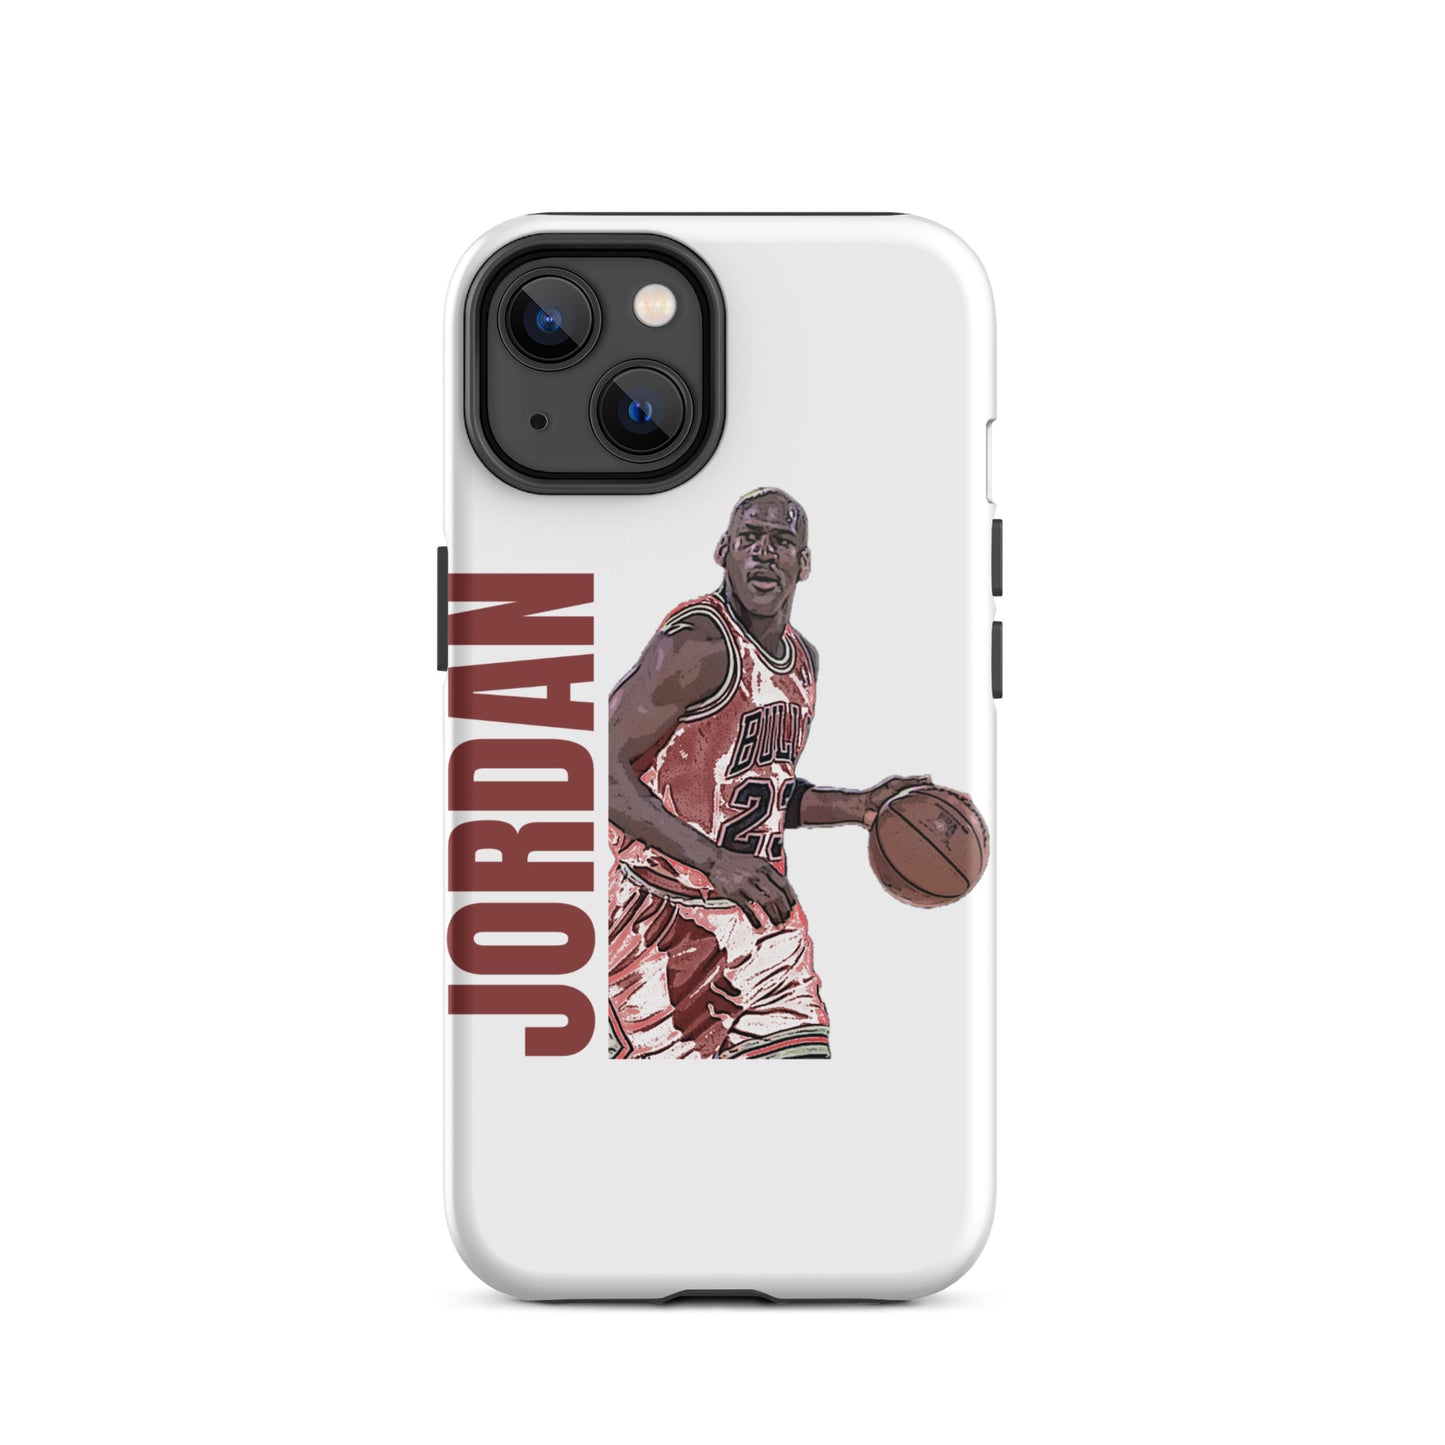 Jordan iPhone case